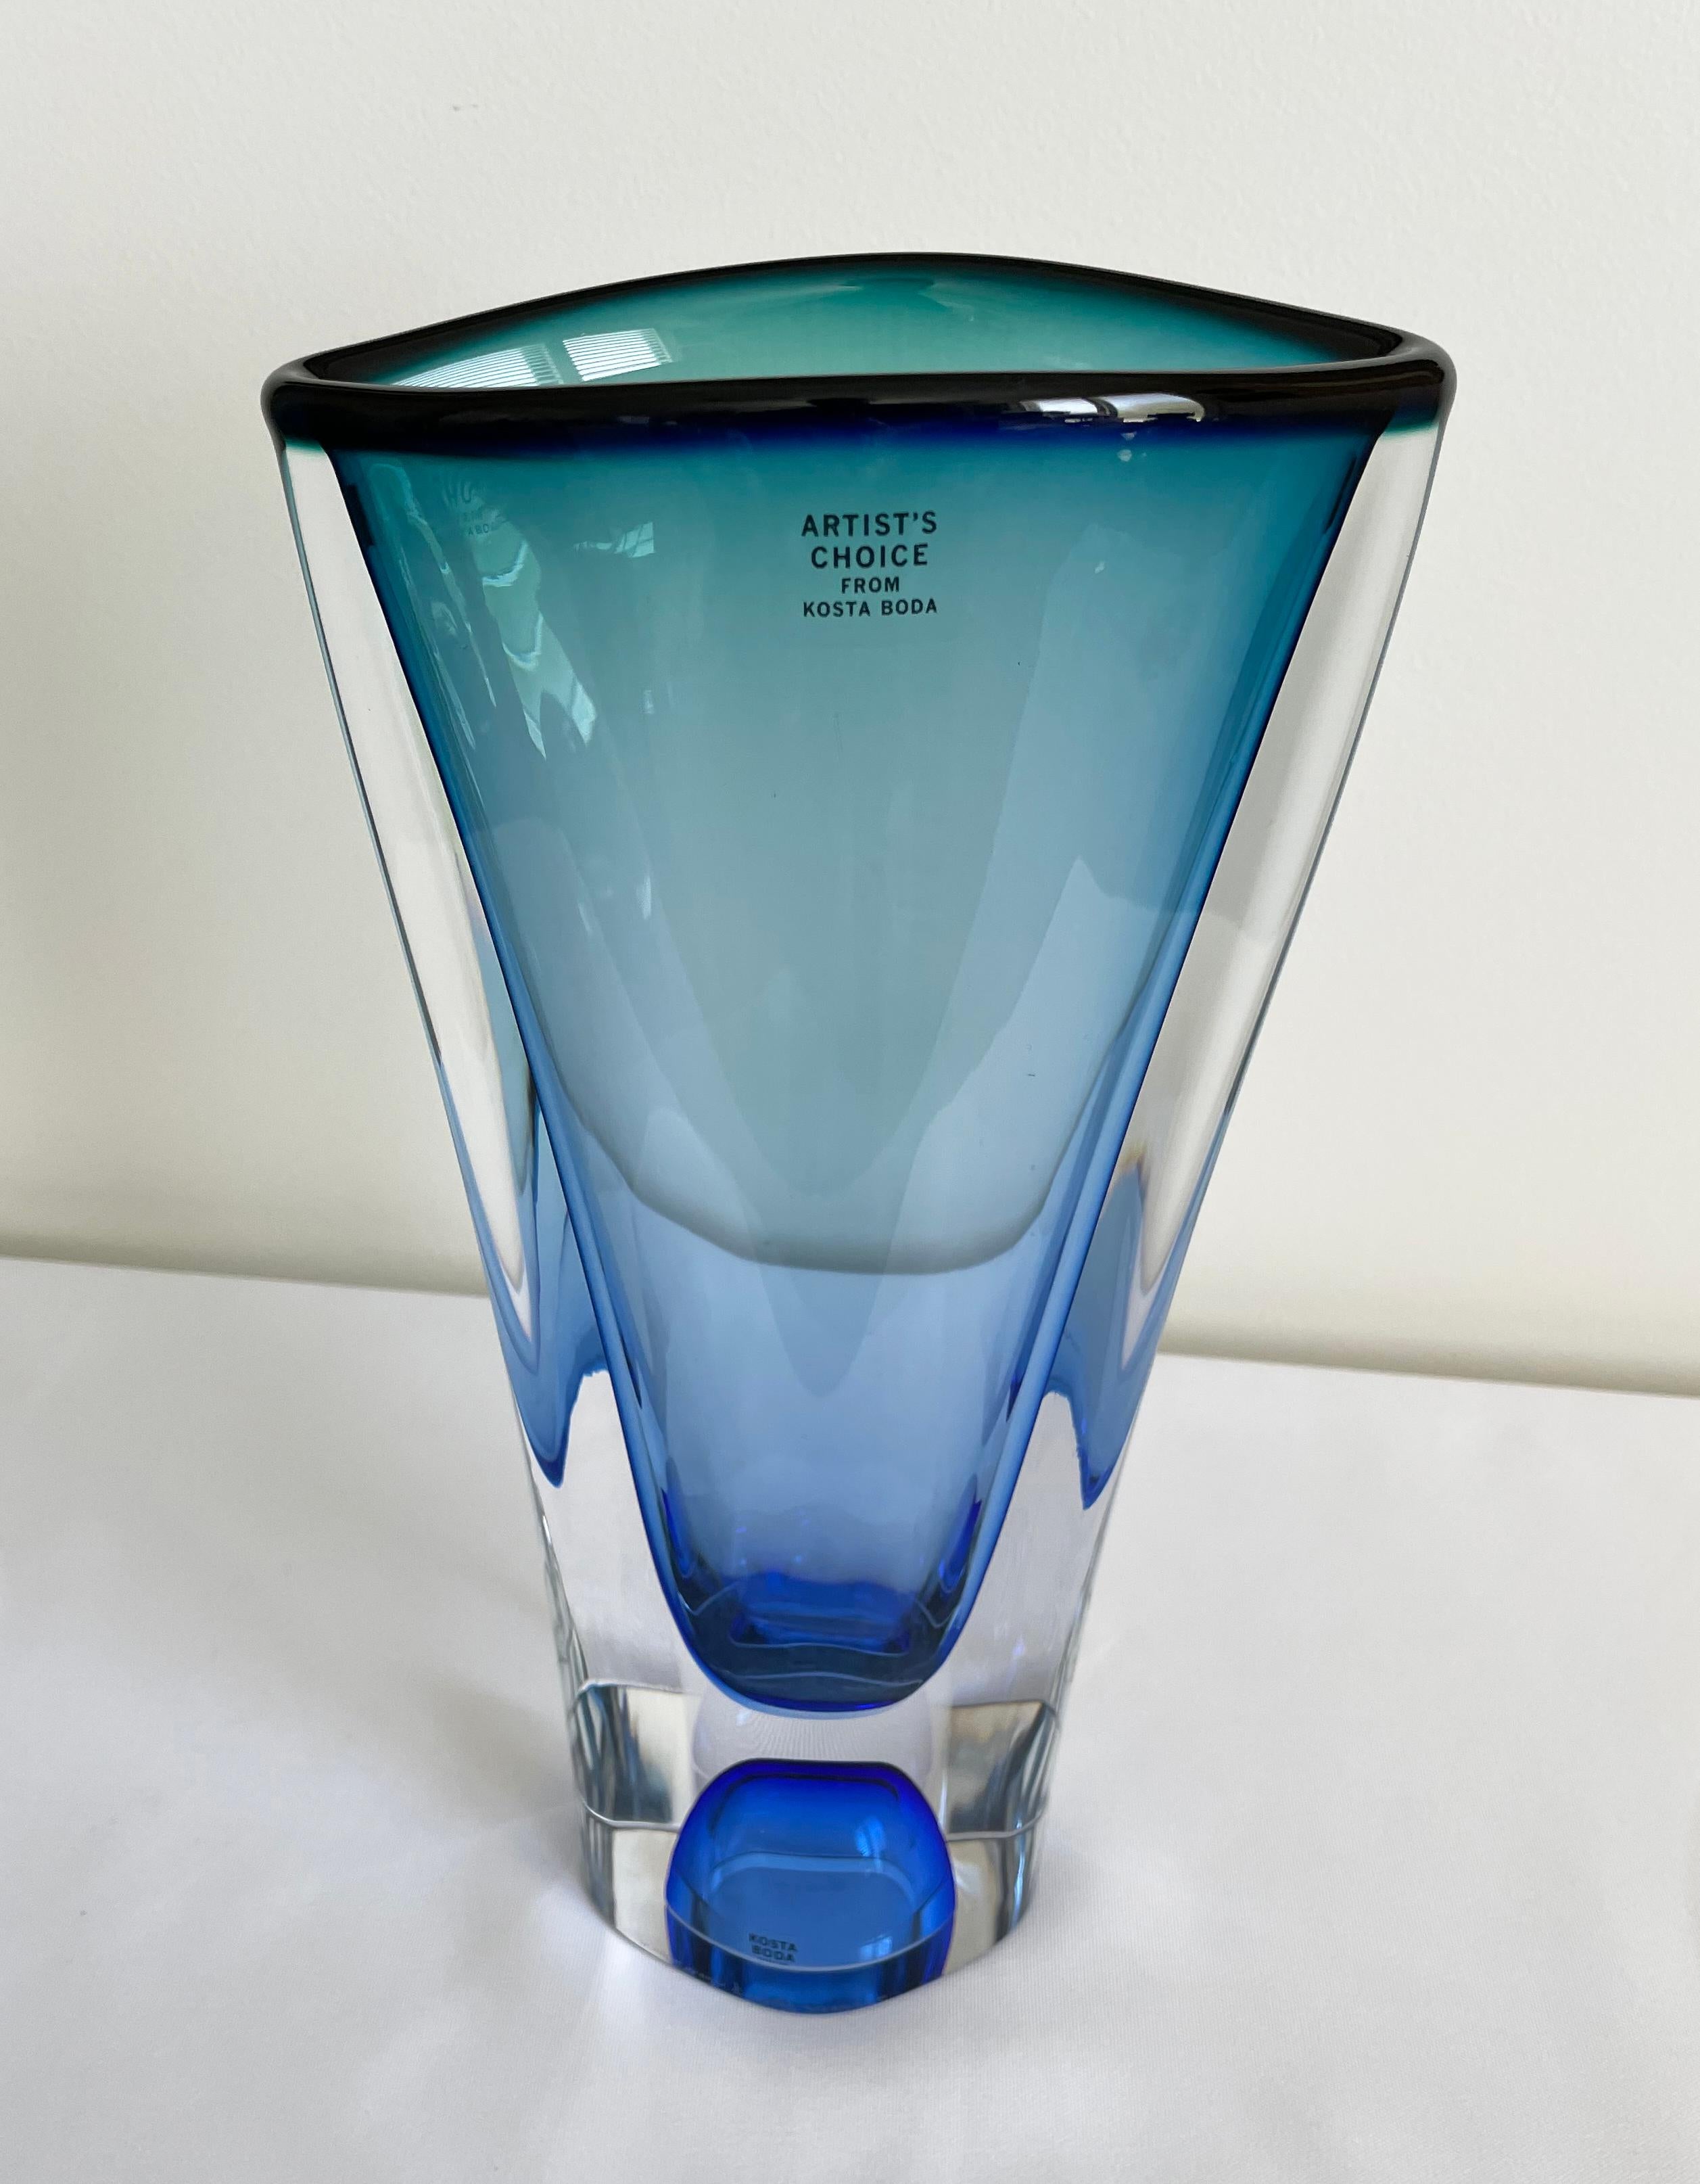 Große blaue Vase der Serie Vision von Kosta Boda, entworfen von dem legendären Glaskünstler Göran Wärff.

Vision wird in der Glashütte Kosta in Schweden mundgeblasen und ist Teil der Kosta Boda Artist Collection'S.